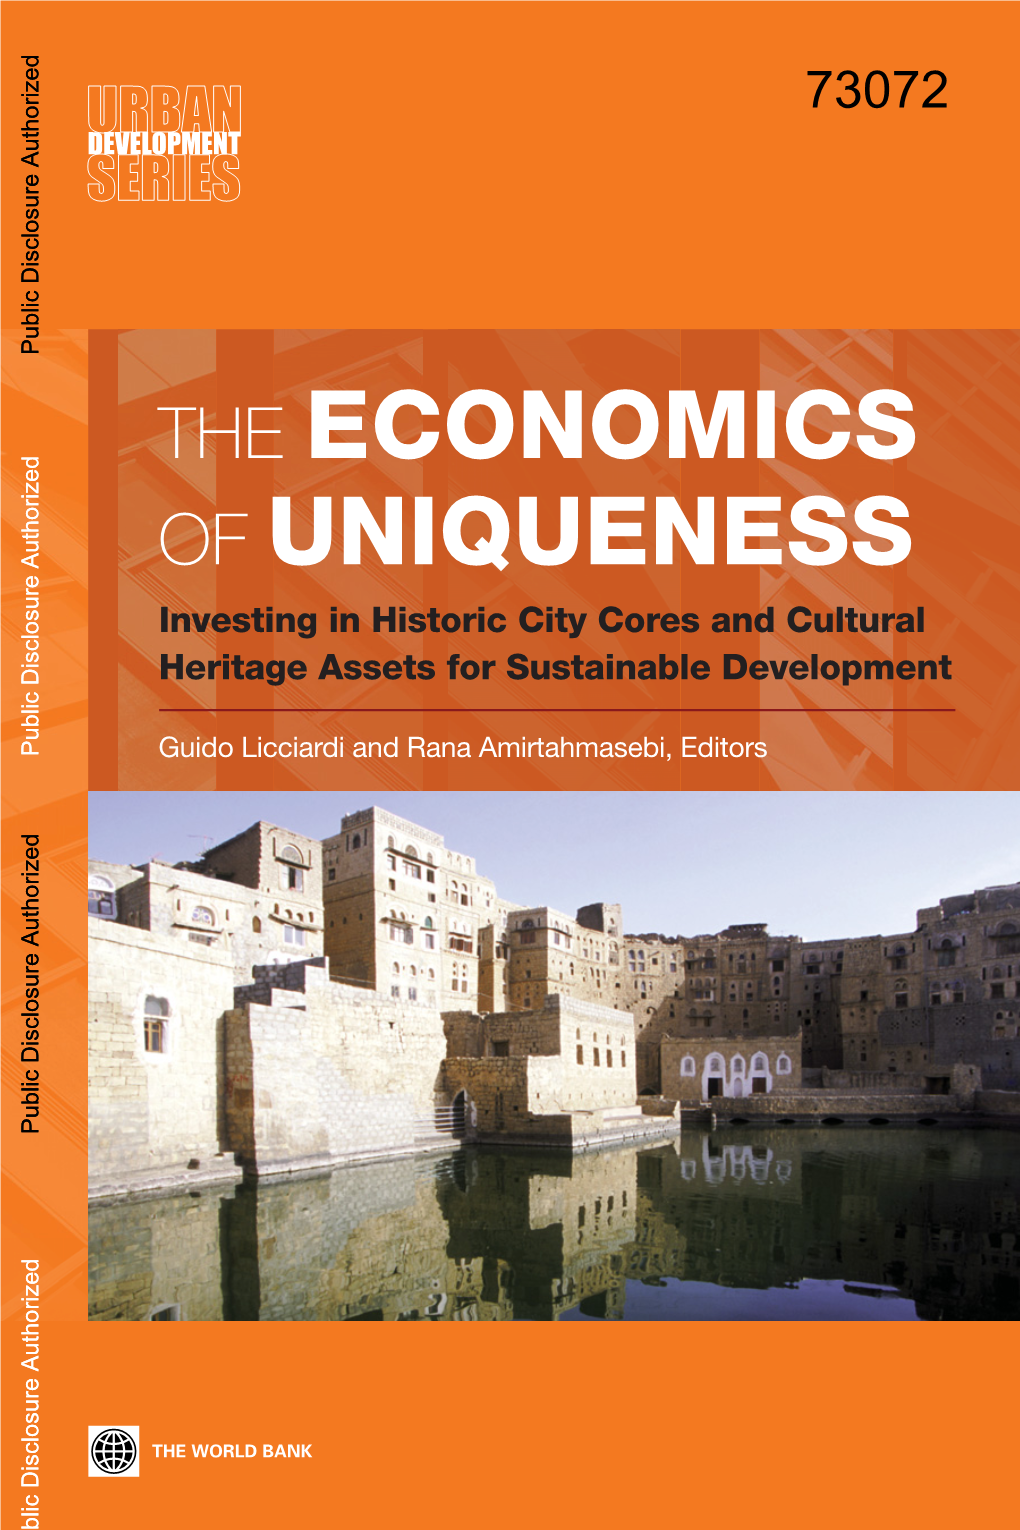 Heritage Economics